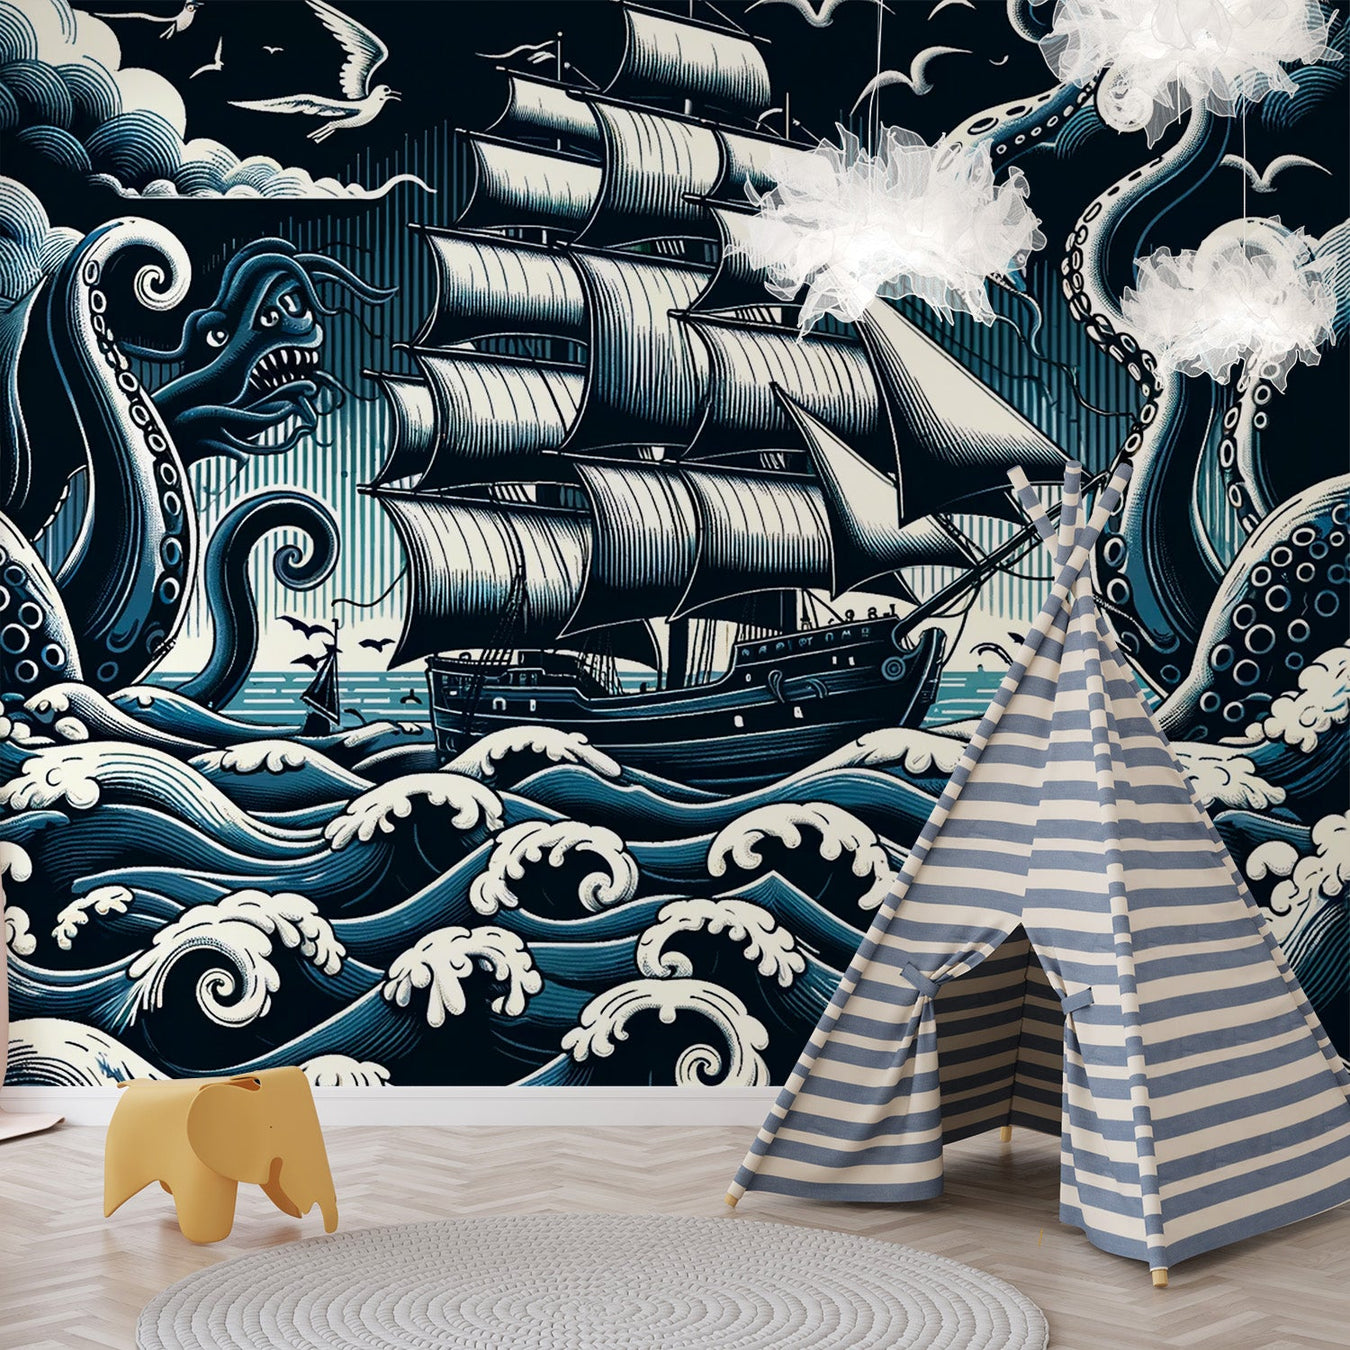 Boat Mural Wallpaper